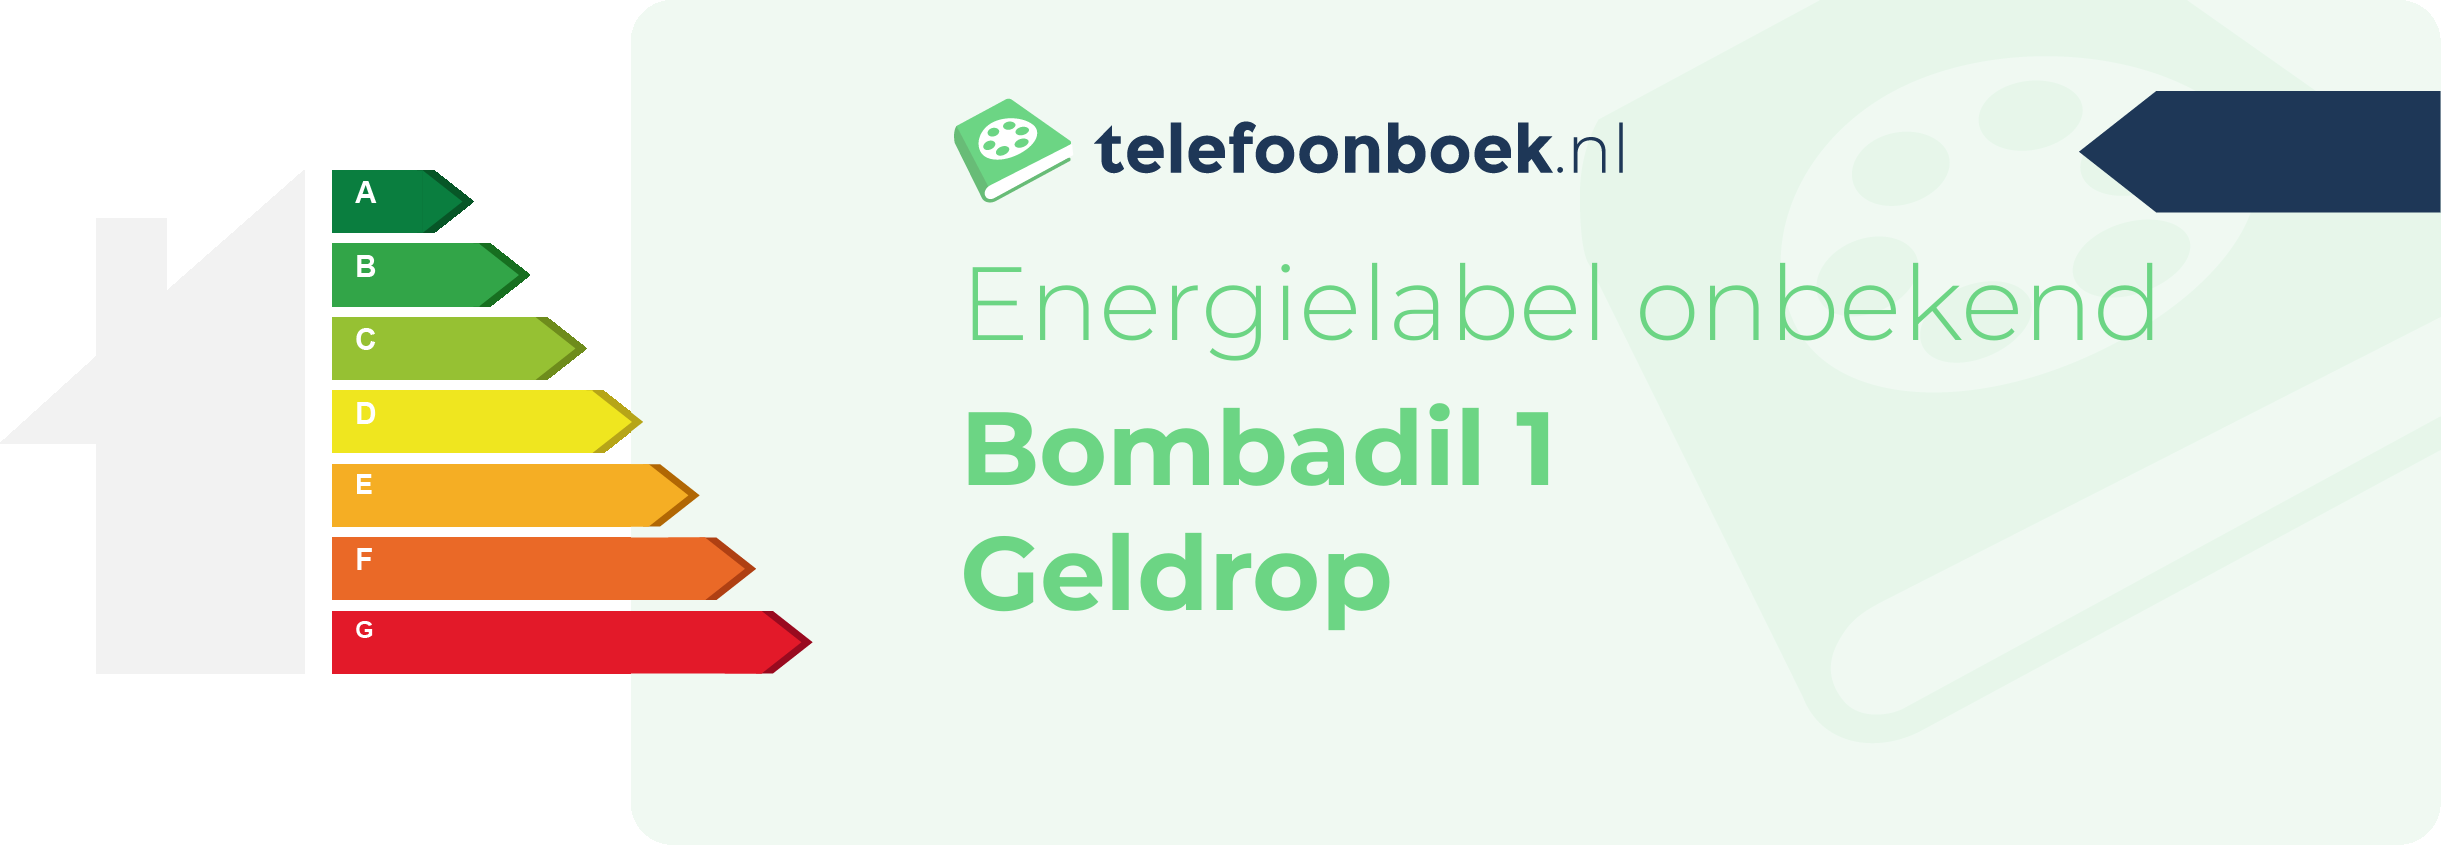 Energielabel Bombadil 1 Geldrop